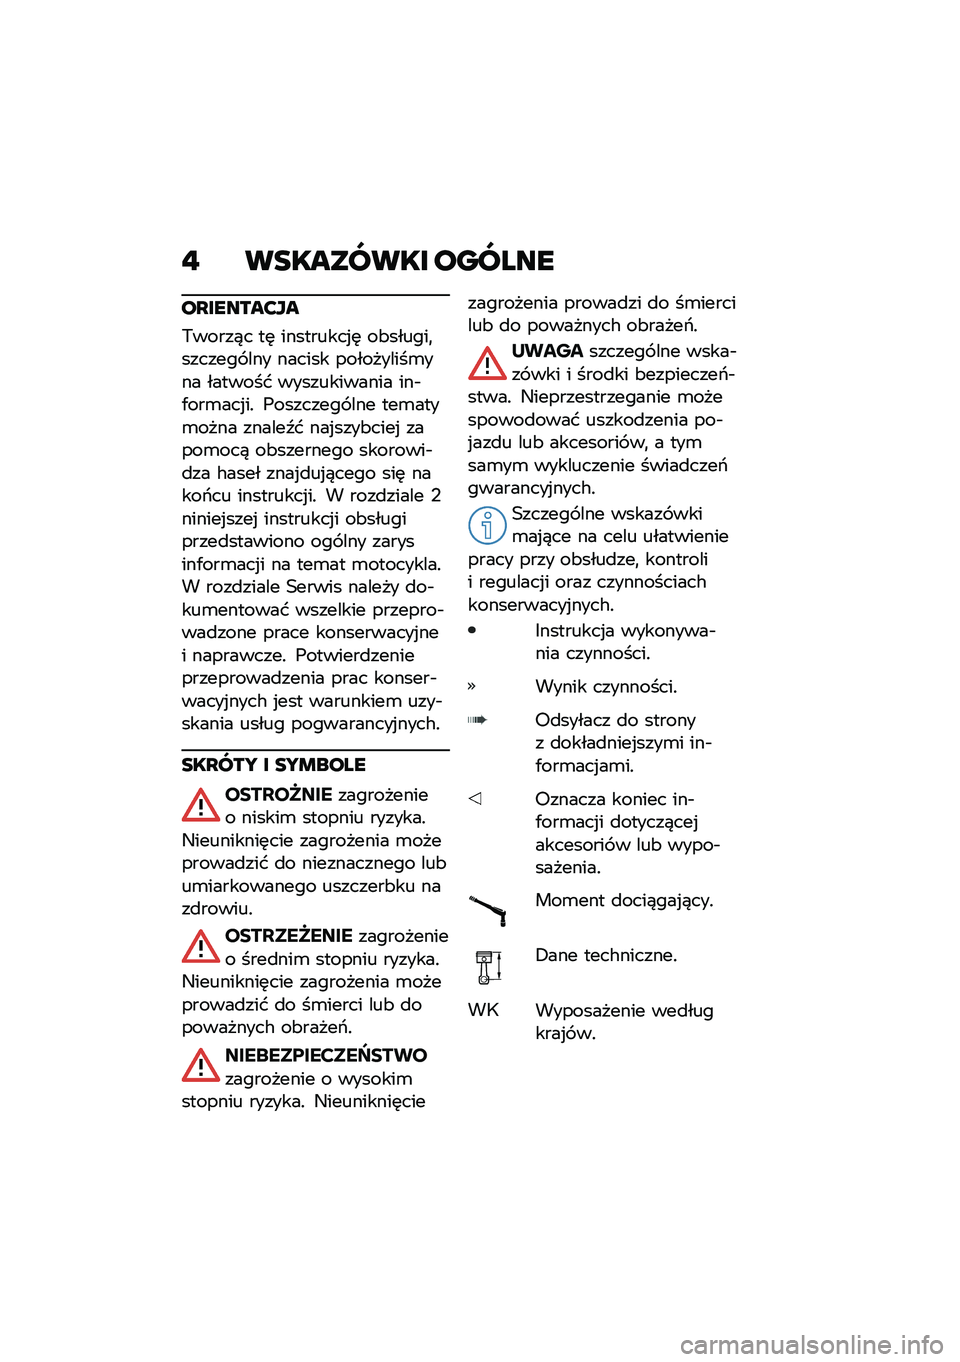 BMW MOTORRAD M 1000 RR 2021  Instrukcja obsługi (in Polish) �" ��������� ������
��L������?��
�,�����)� ��	 ���������%�	 ��&������
������� ��� ������ ����������\b��� ������� �����